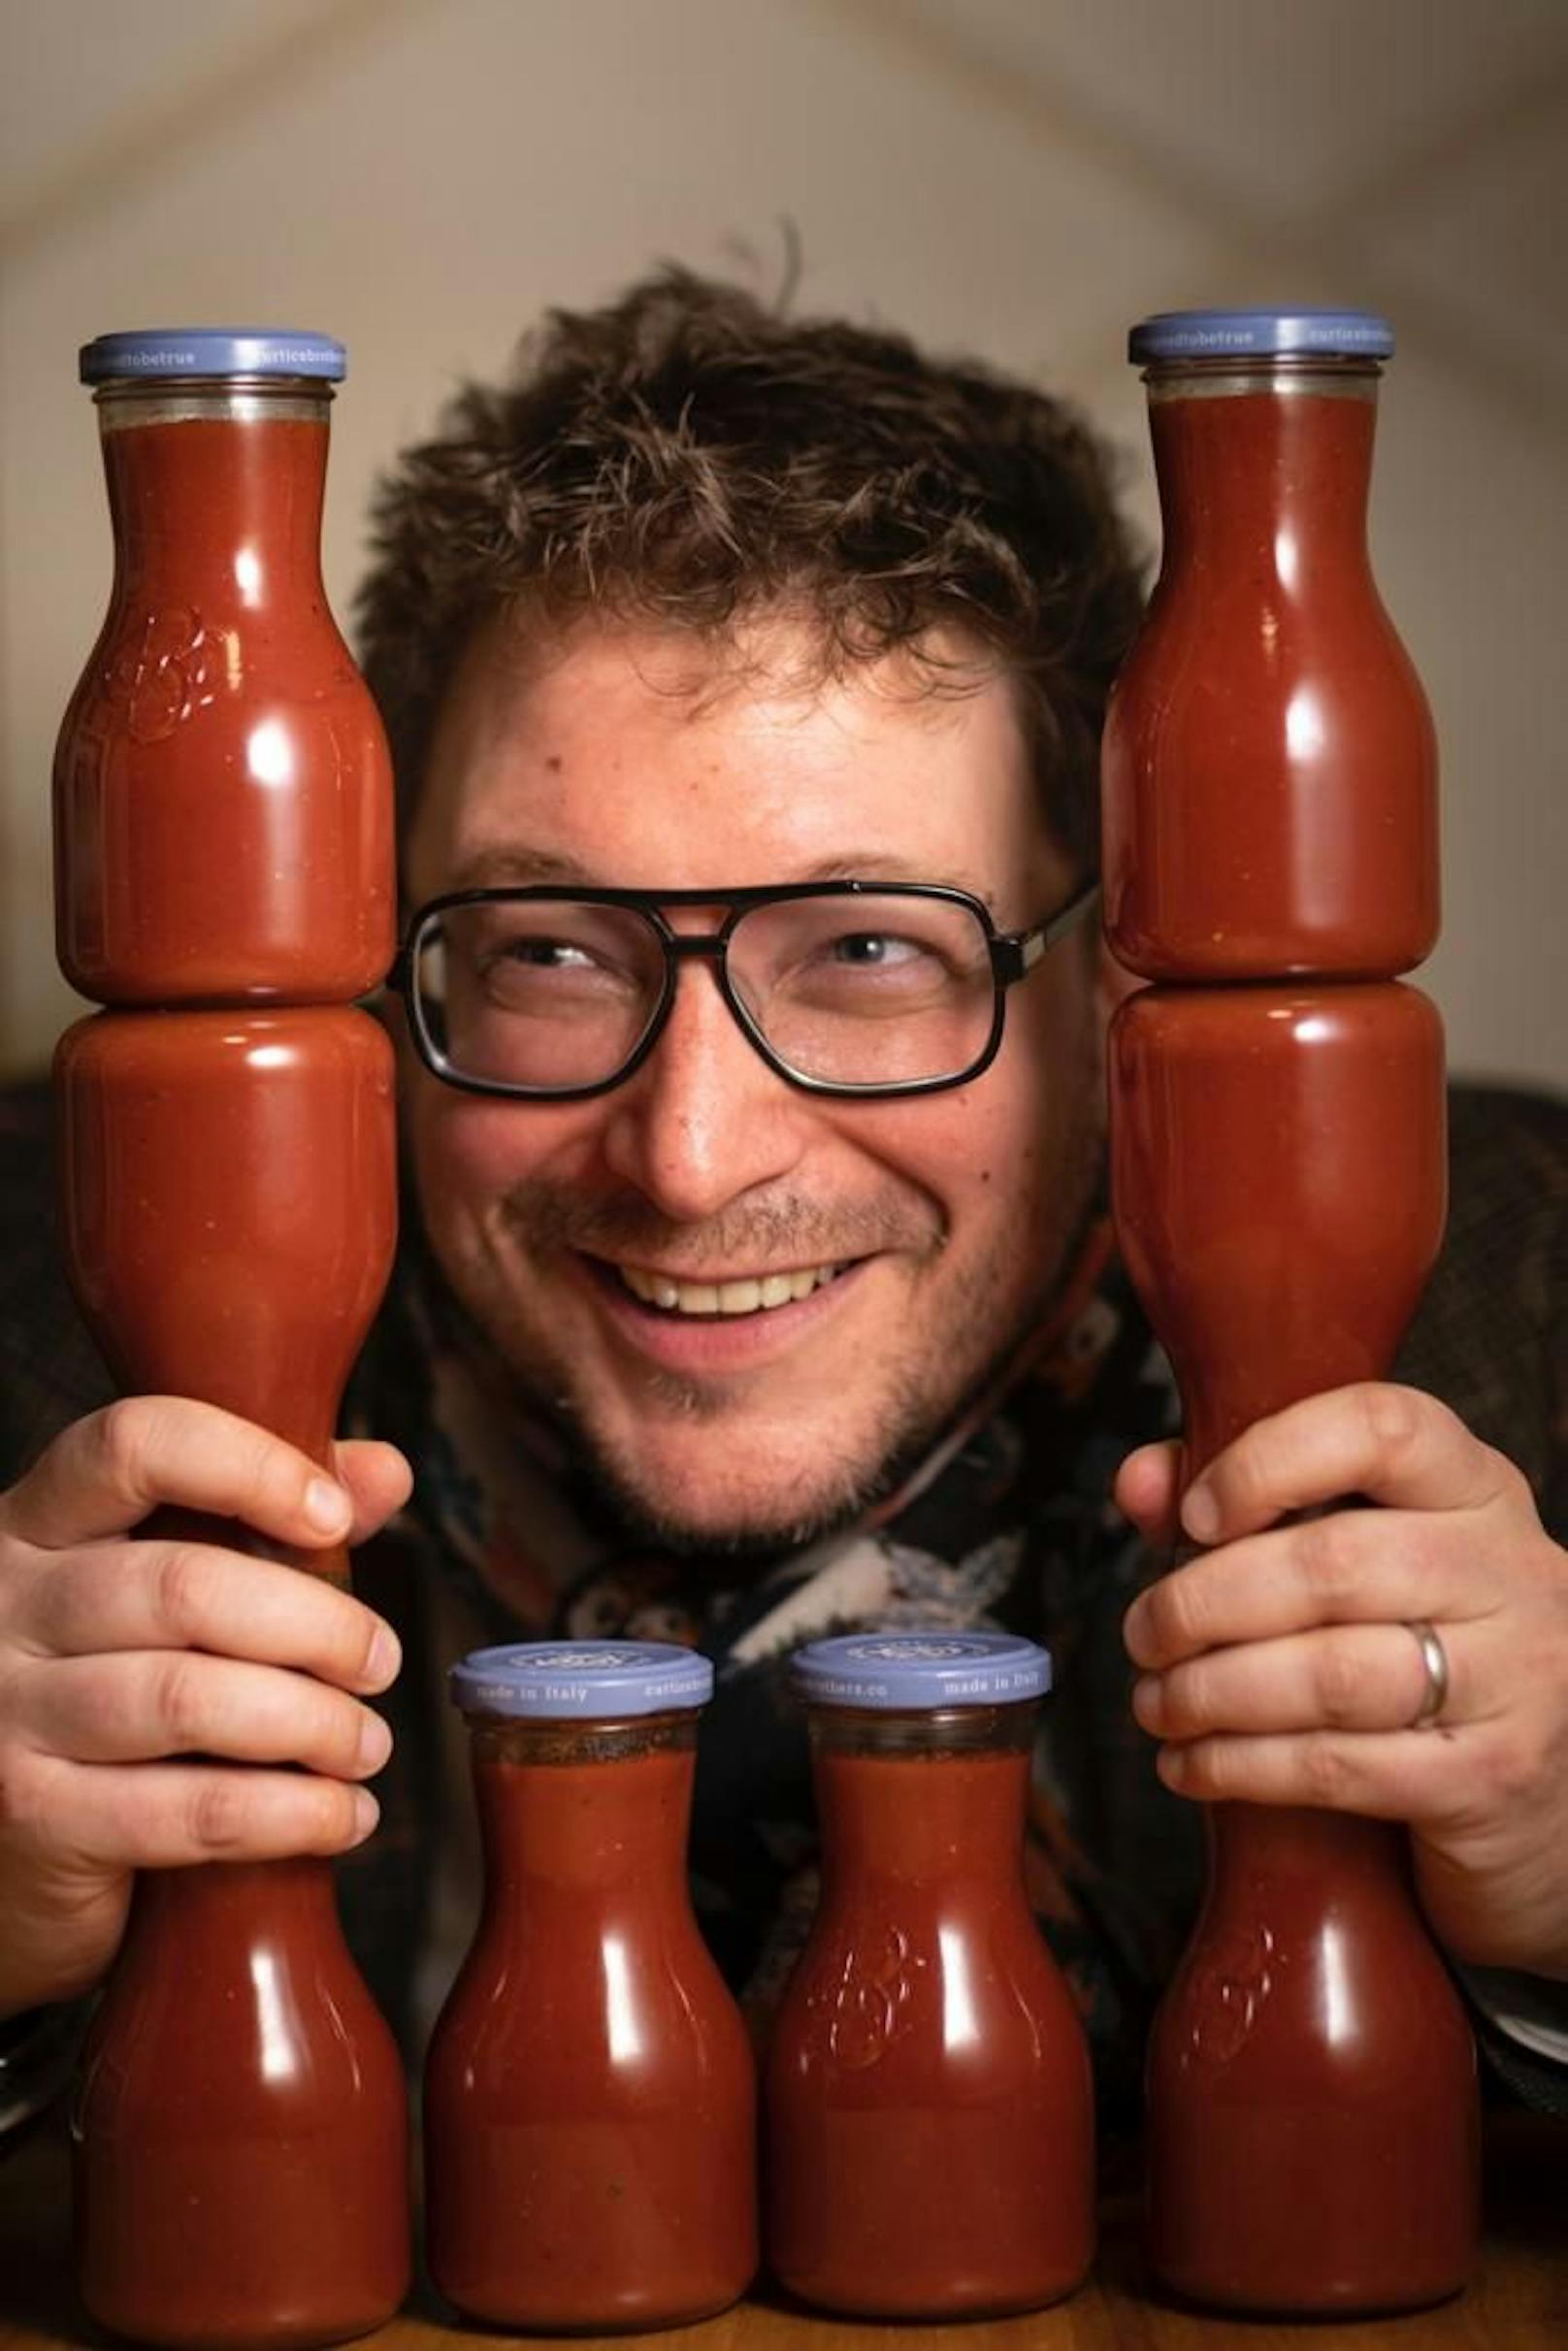 Ketchup-Pionier (46) aus NÖ verkauft an Mautner Markhof